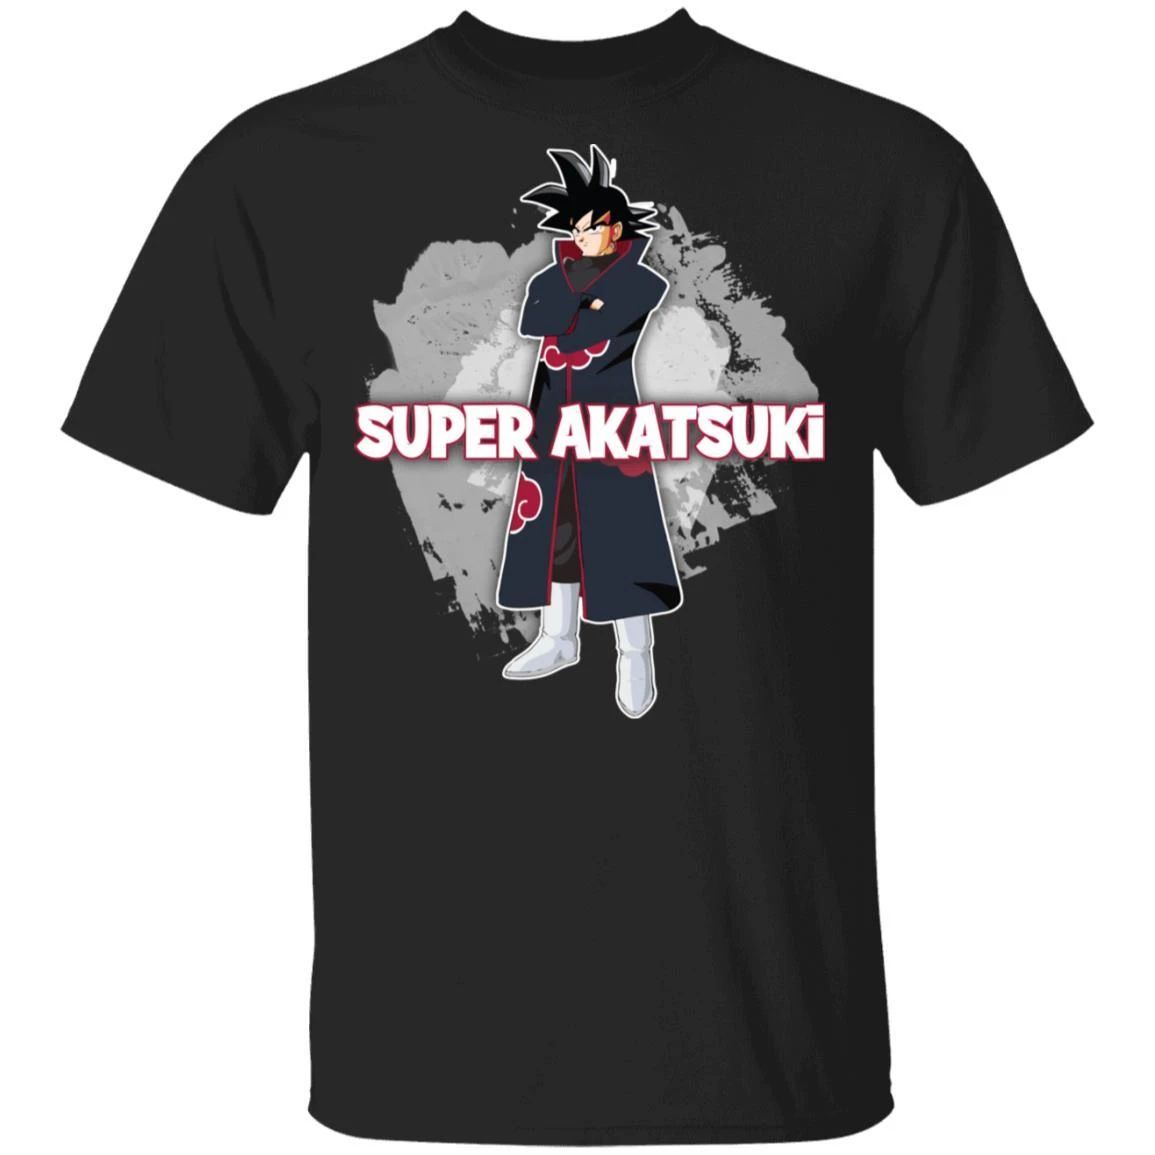 Super Akatsuki Goku Akatsuki T-shirt Anime Tee